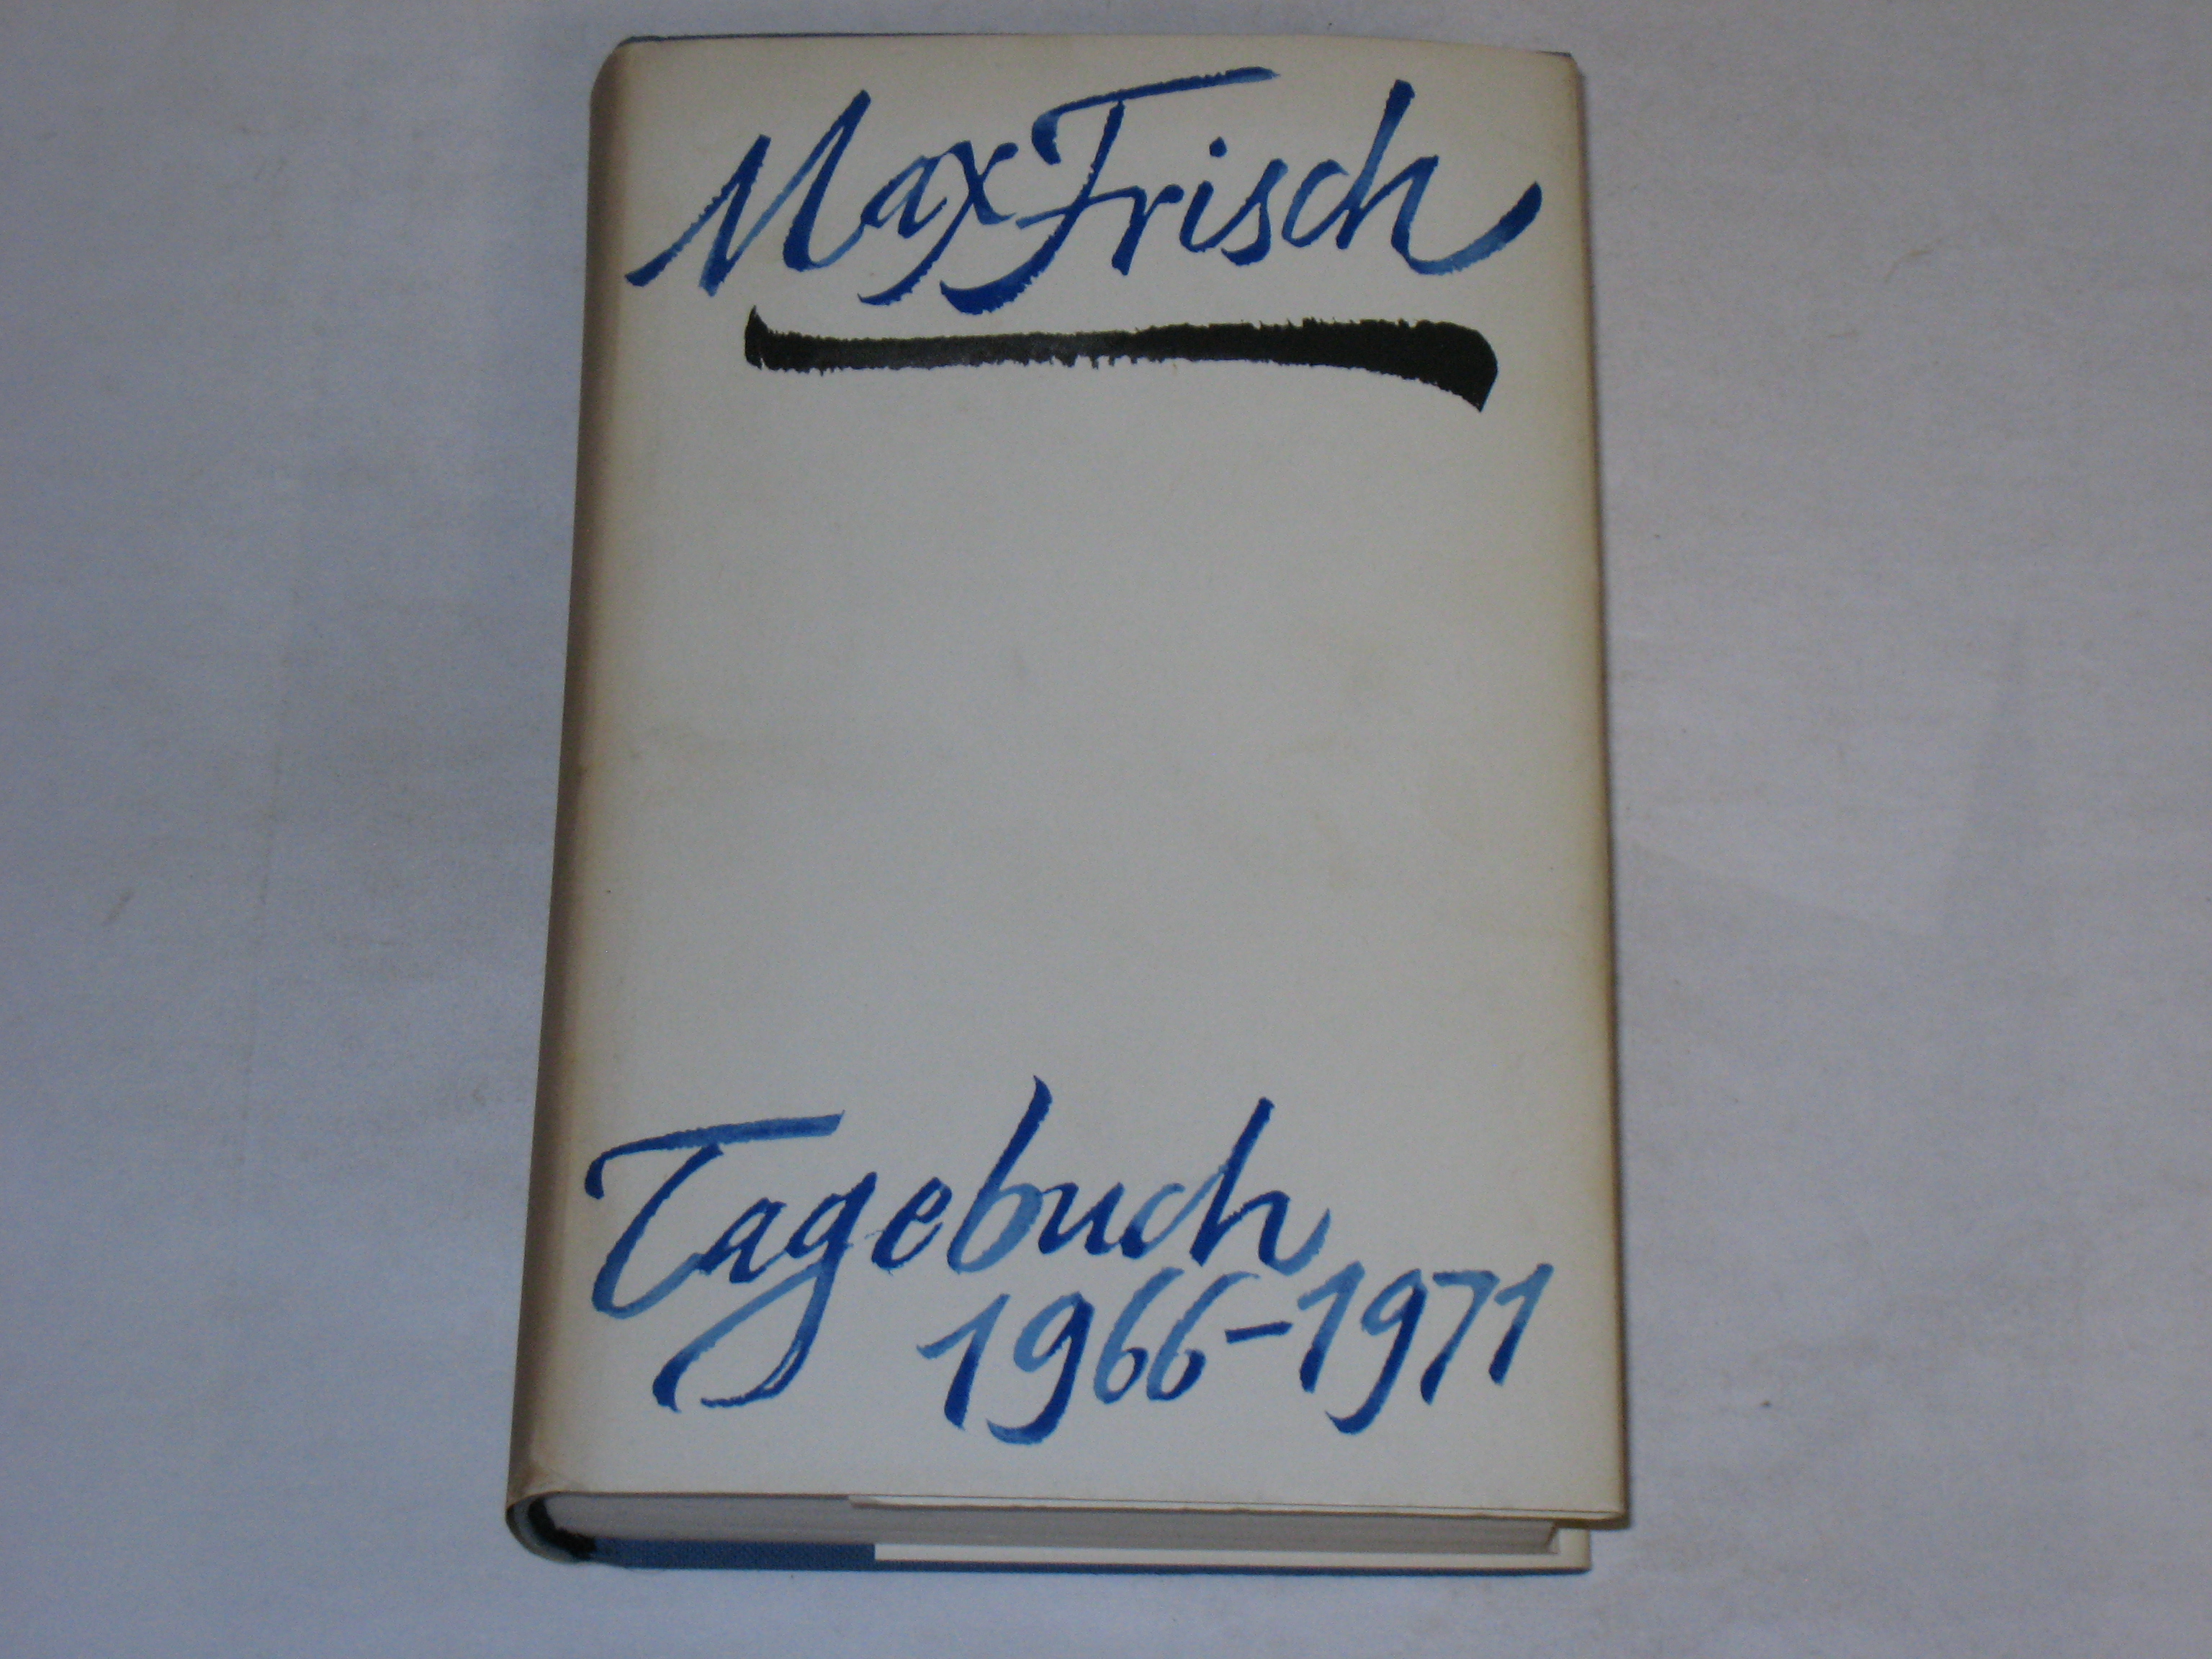 Tagebuch 1966-1971. - Frisch, Max.